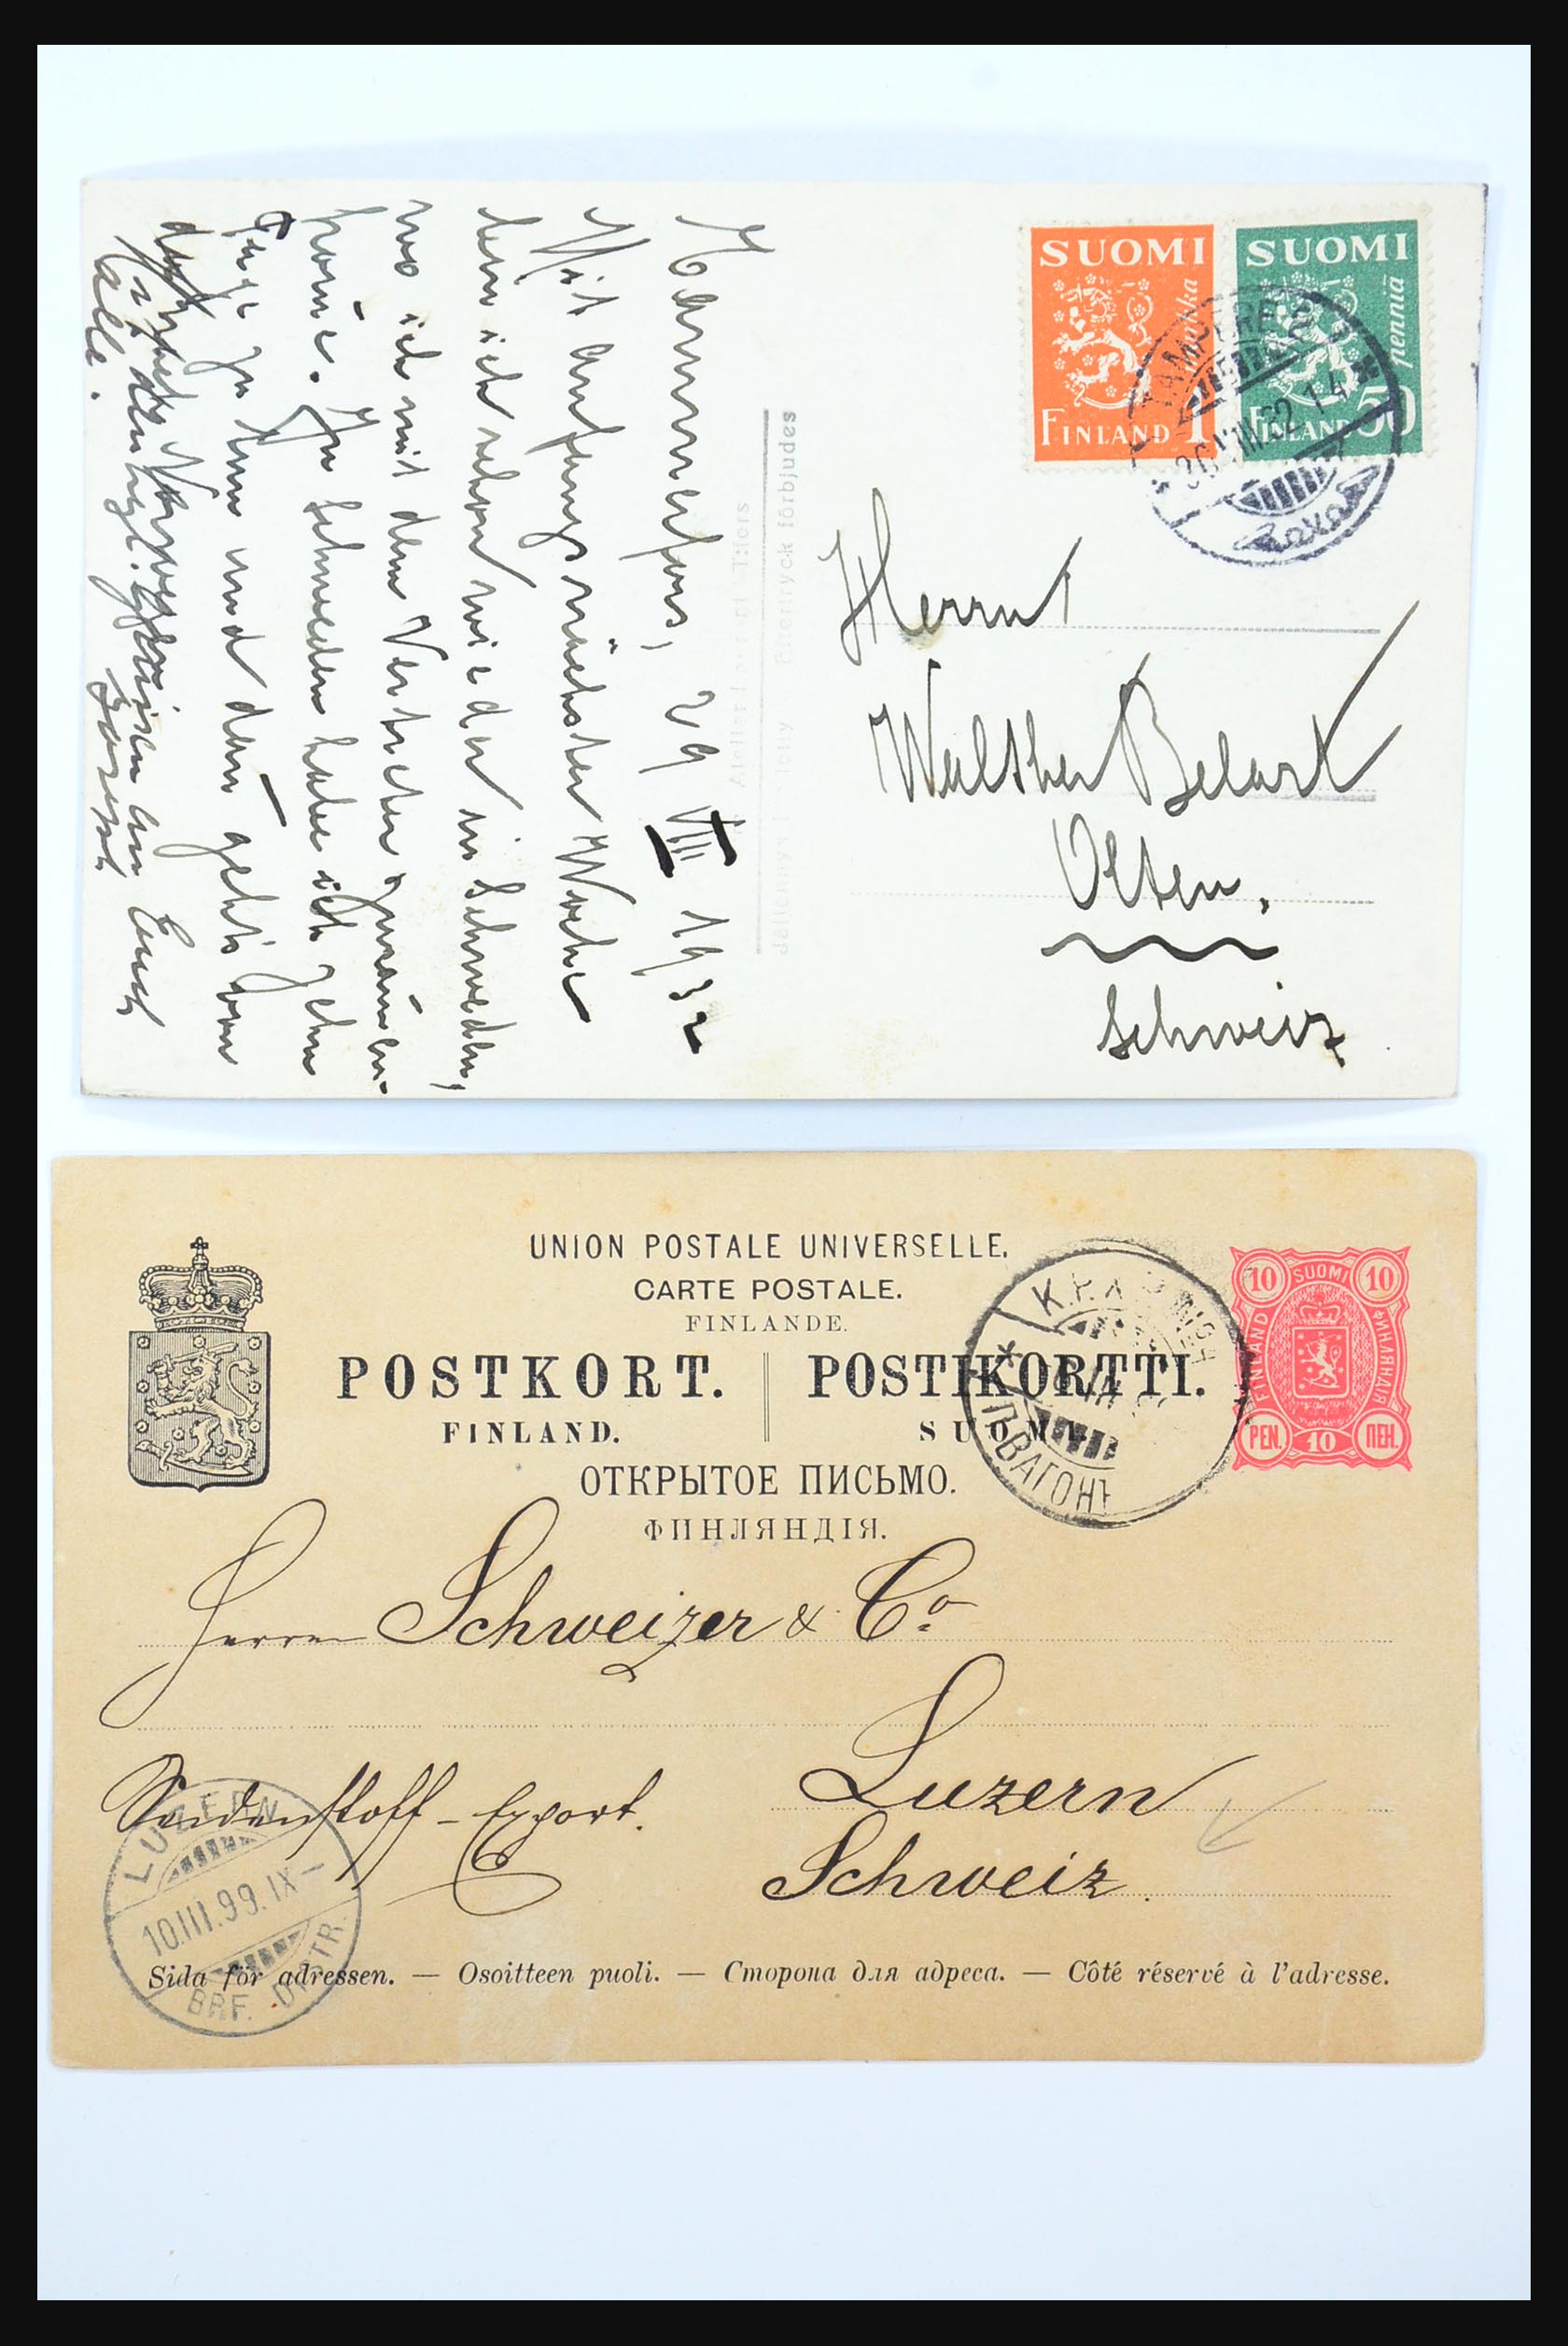 31363 163 - 31363 Finland brieven 1874-1974.